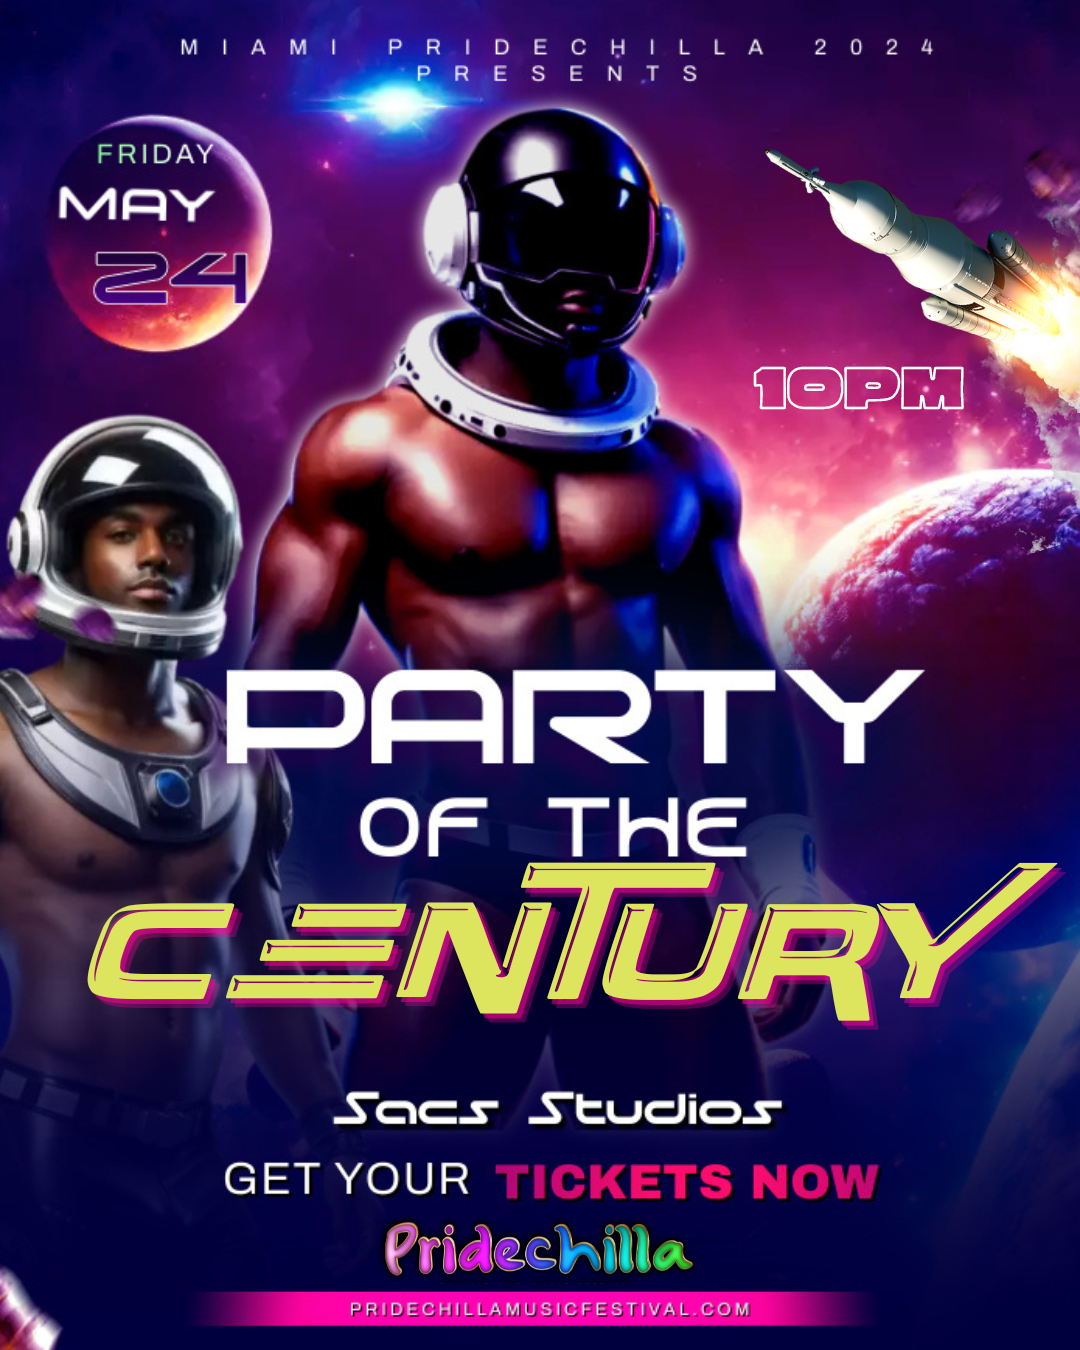 Party of the Century  on mai 24, 22:00@Sacs Studios - Achetez des billets et obtenez des informations surAfro Pride Federation pridechillamusicfestival